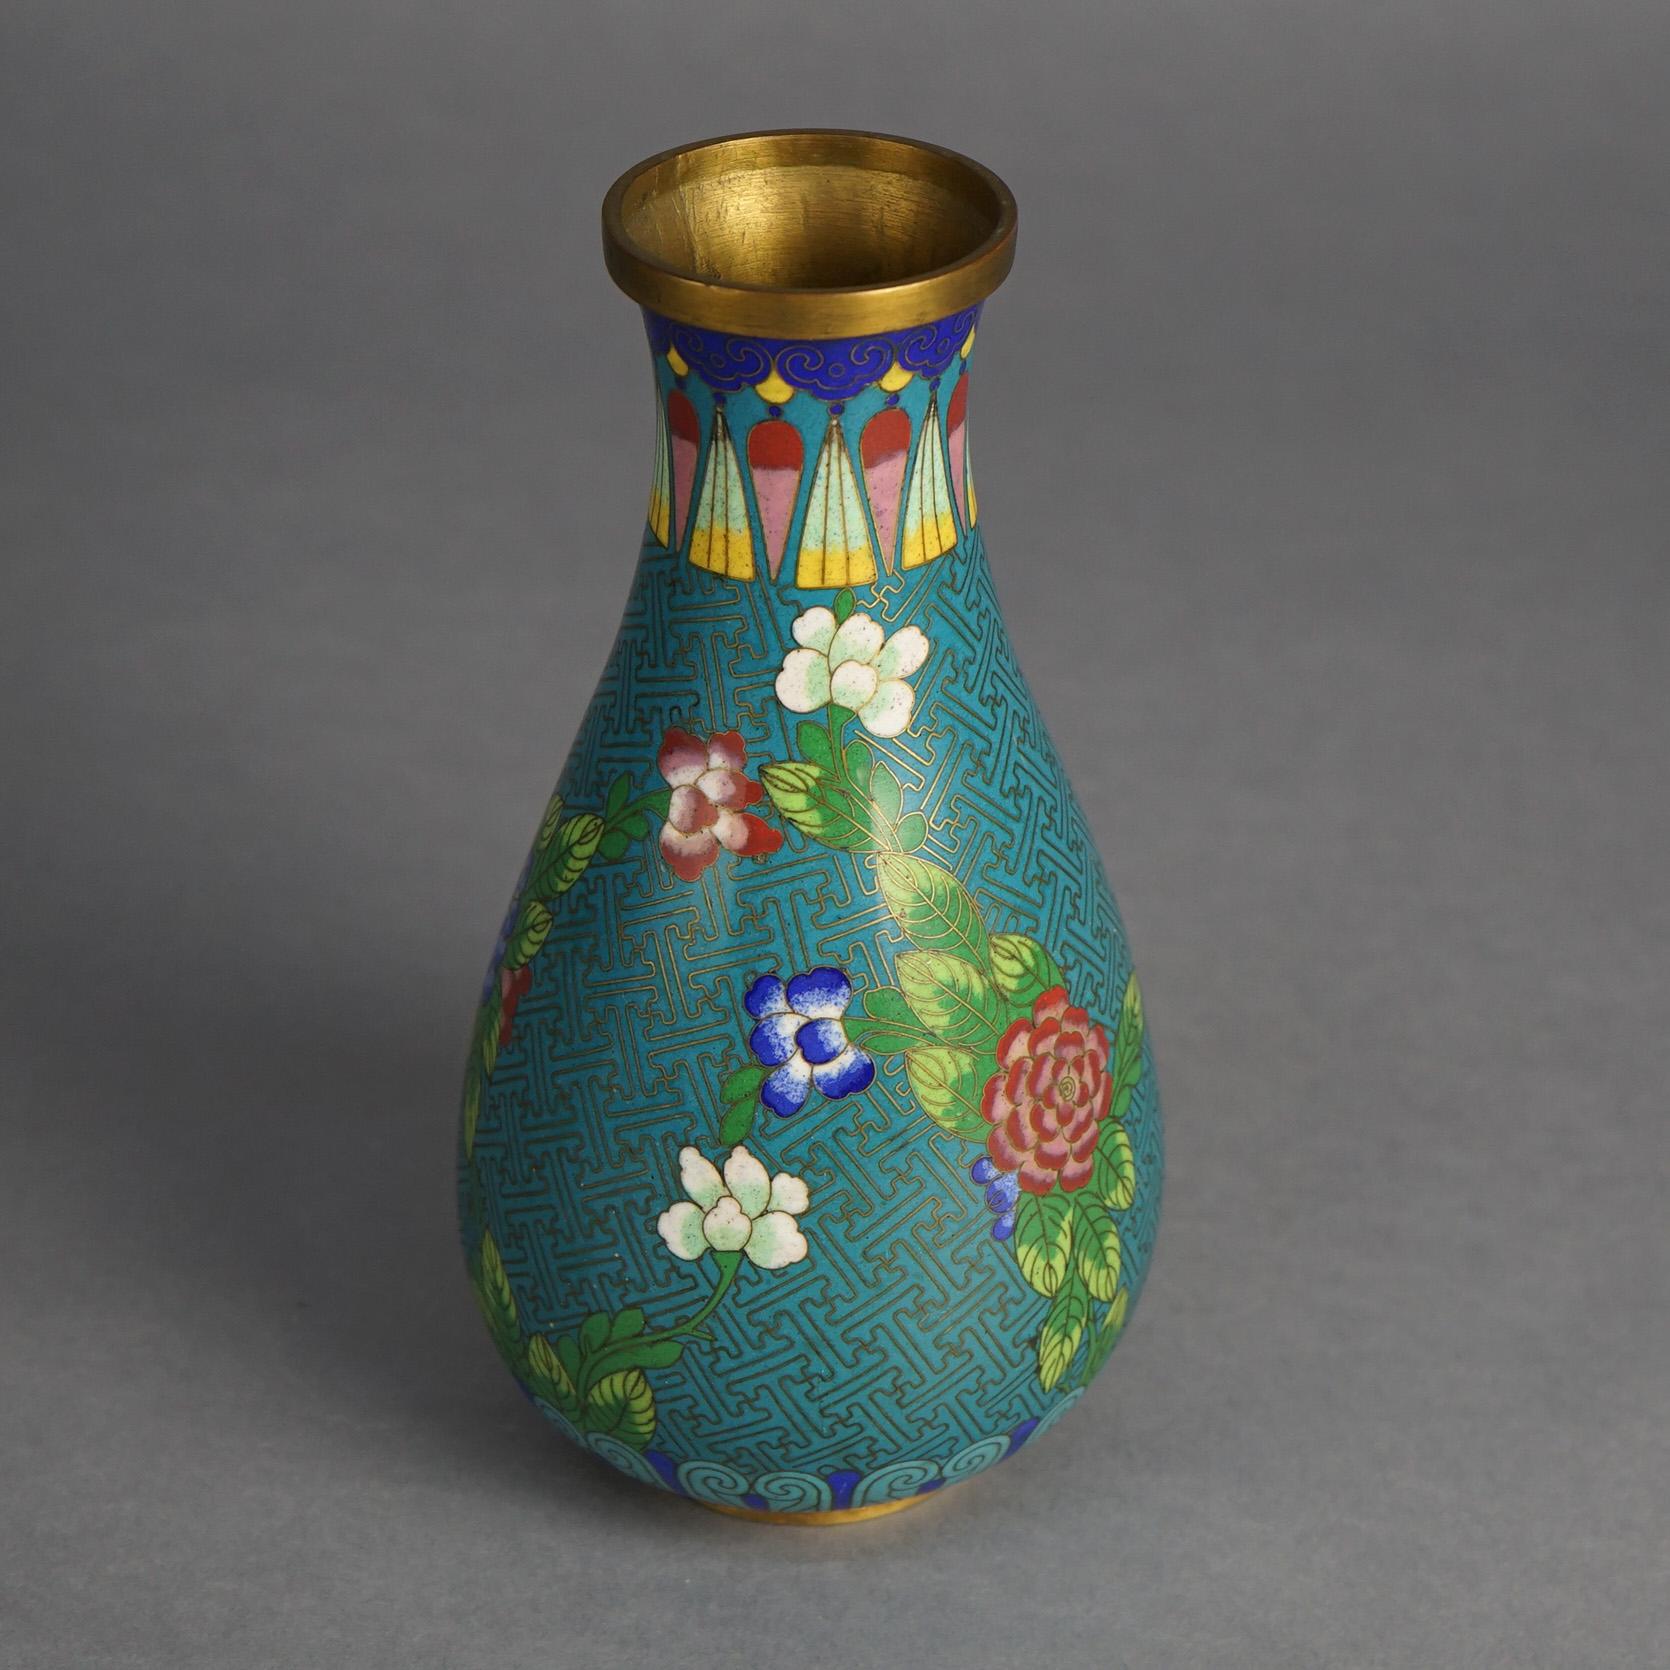 Antique Japanese Meiji Cloisonne Enameled Vase with Flowers C1920

Measures- 9''H x 4.5''W x 4.5''D